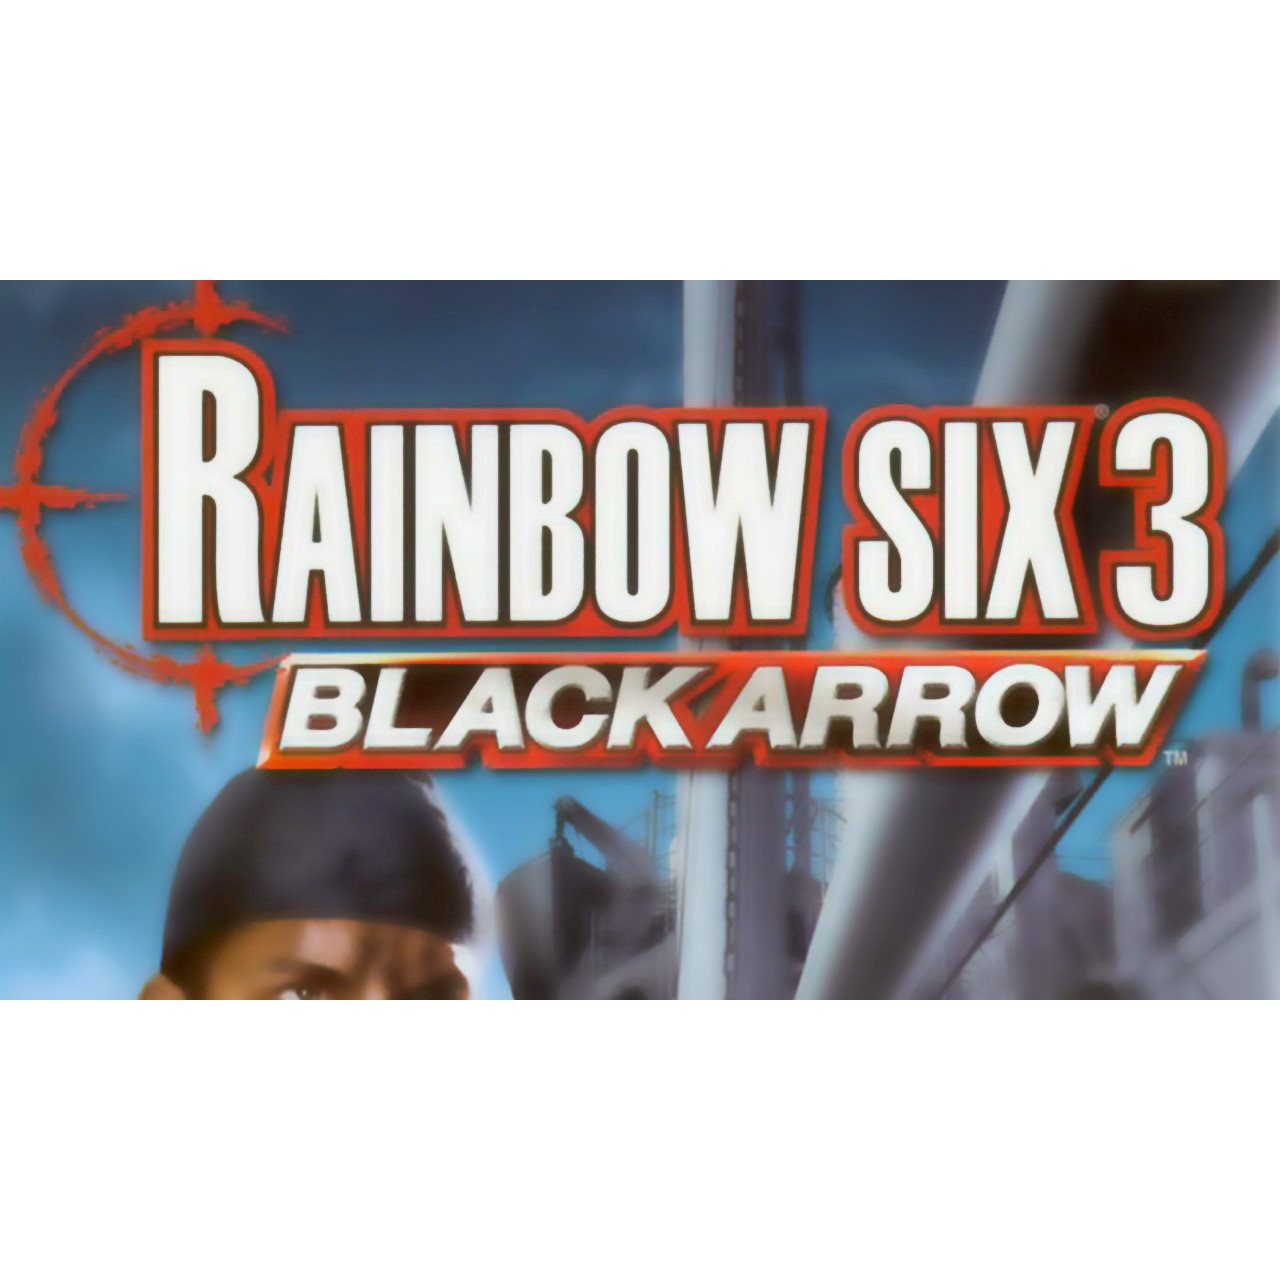 Tom Clancy's Rainbow Six 3: Black Arrow Microsoft Xbox Game